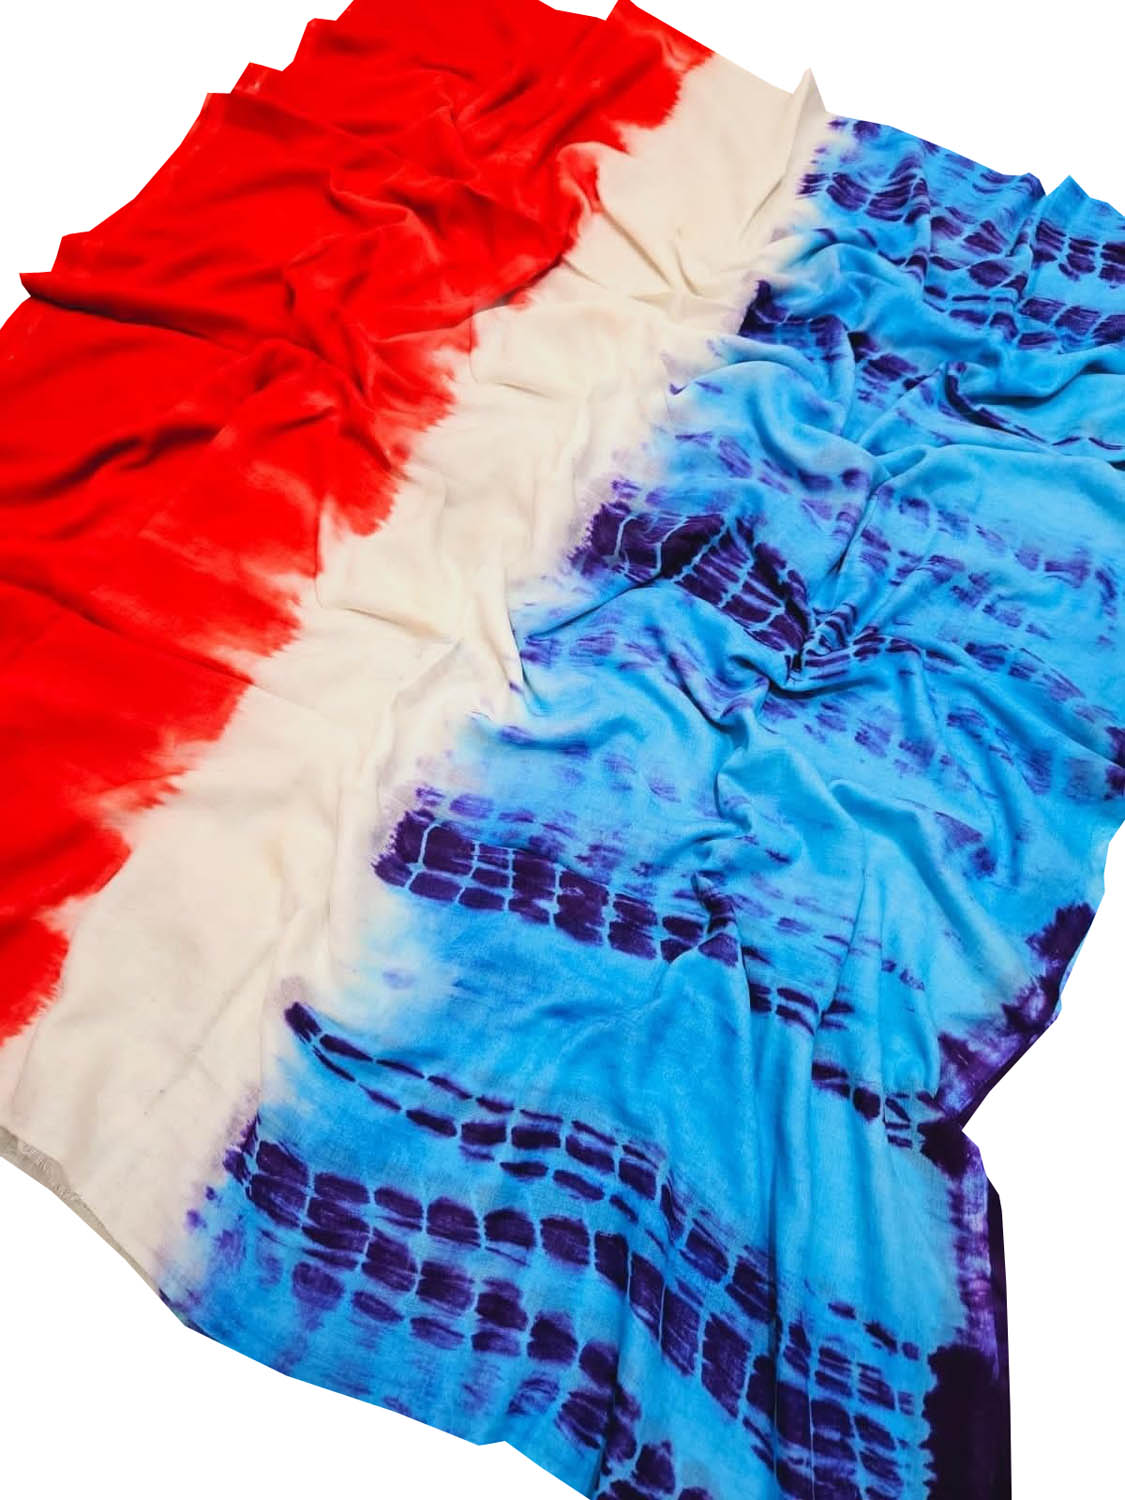 Multicolor Bhagalpur Mul Mul Cotton Shibori Design Saree - Buy Now